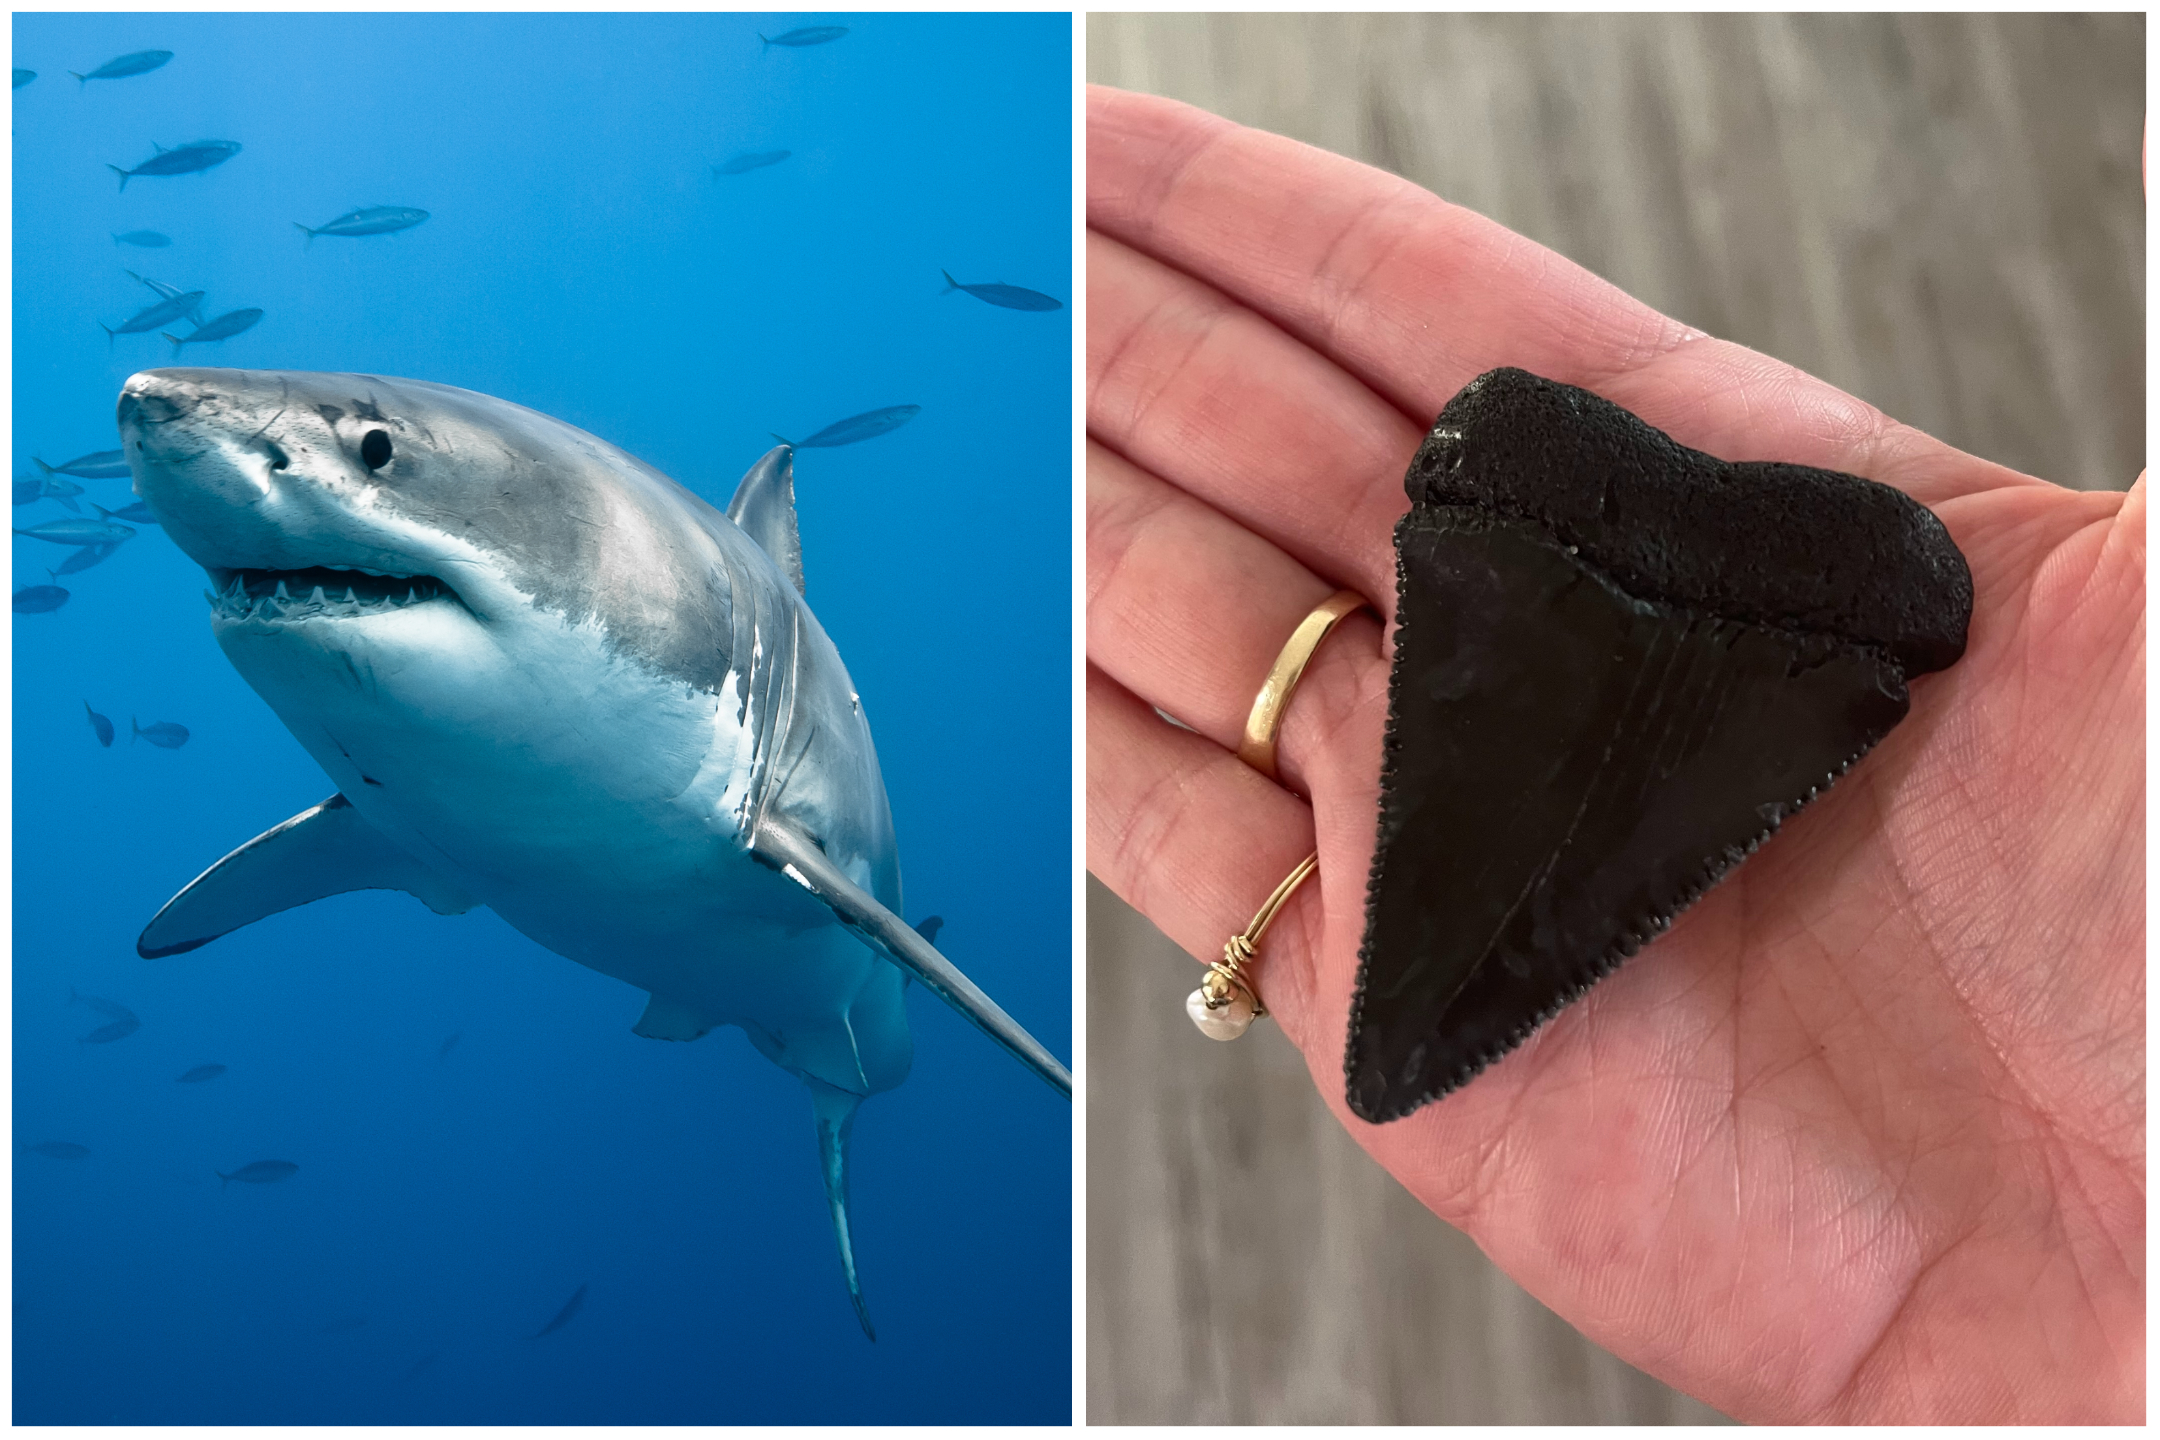 https://d.newsweek.com/en/full/2197145/great-white-shark-tooth.jpg